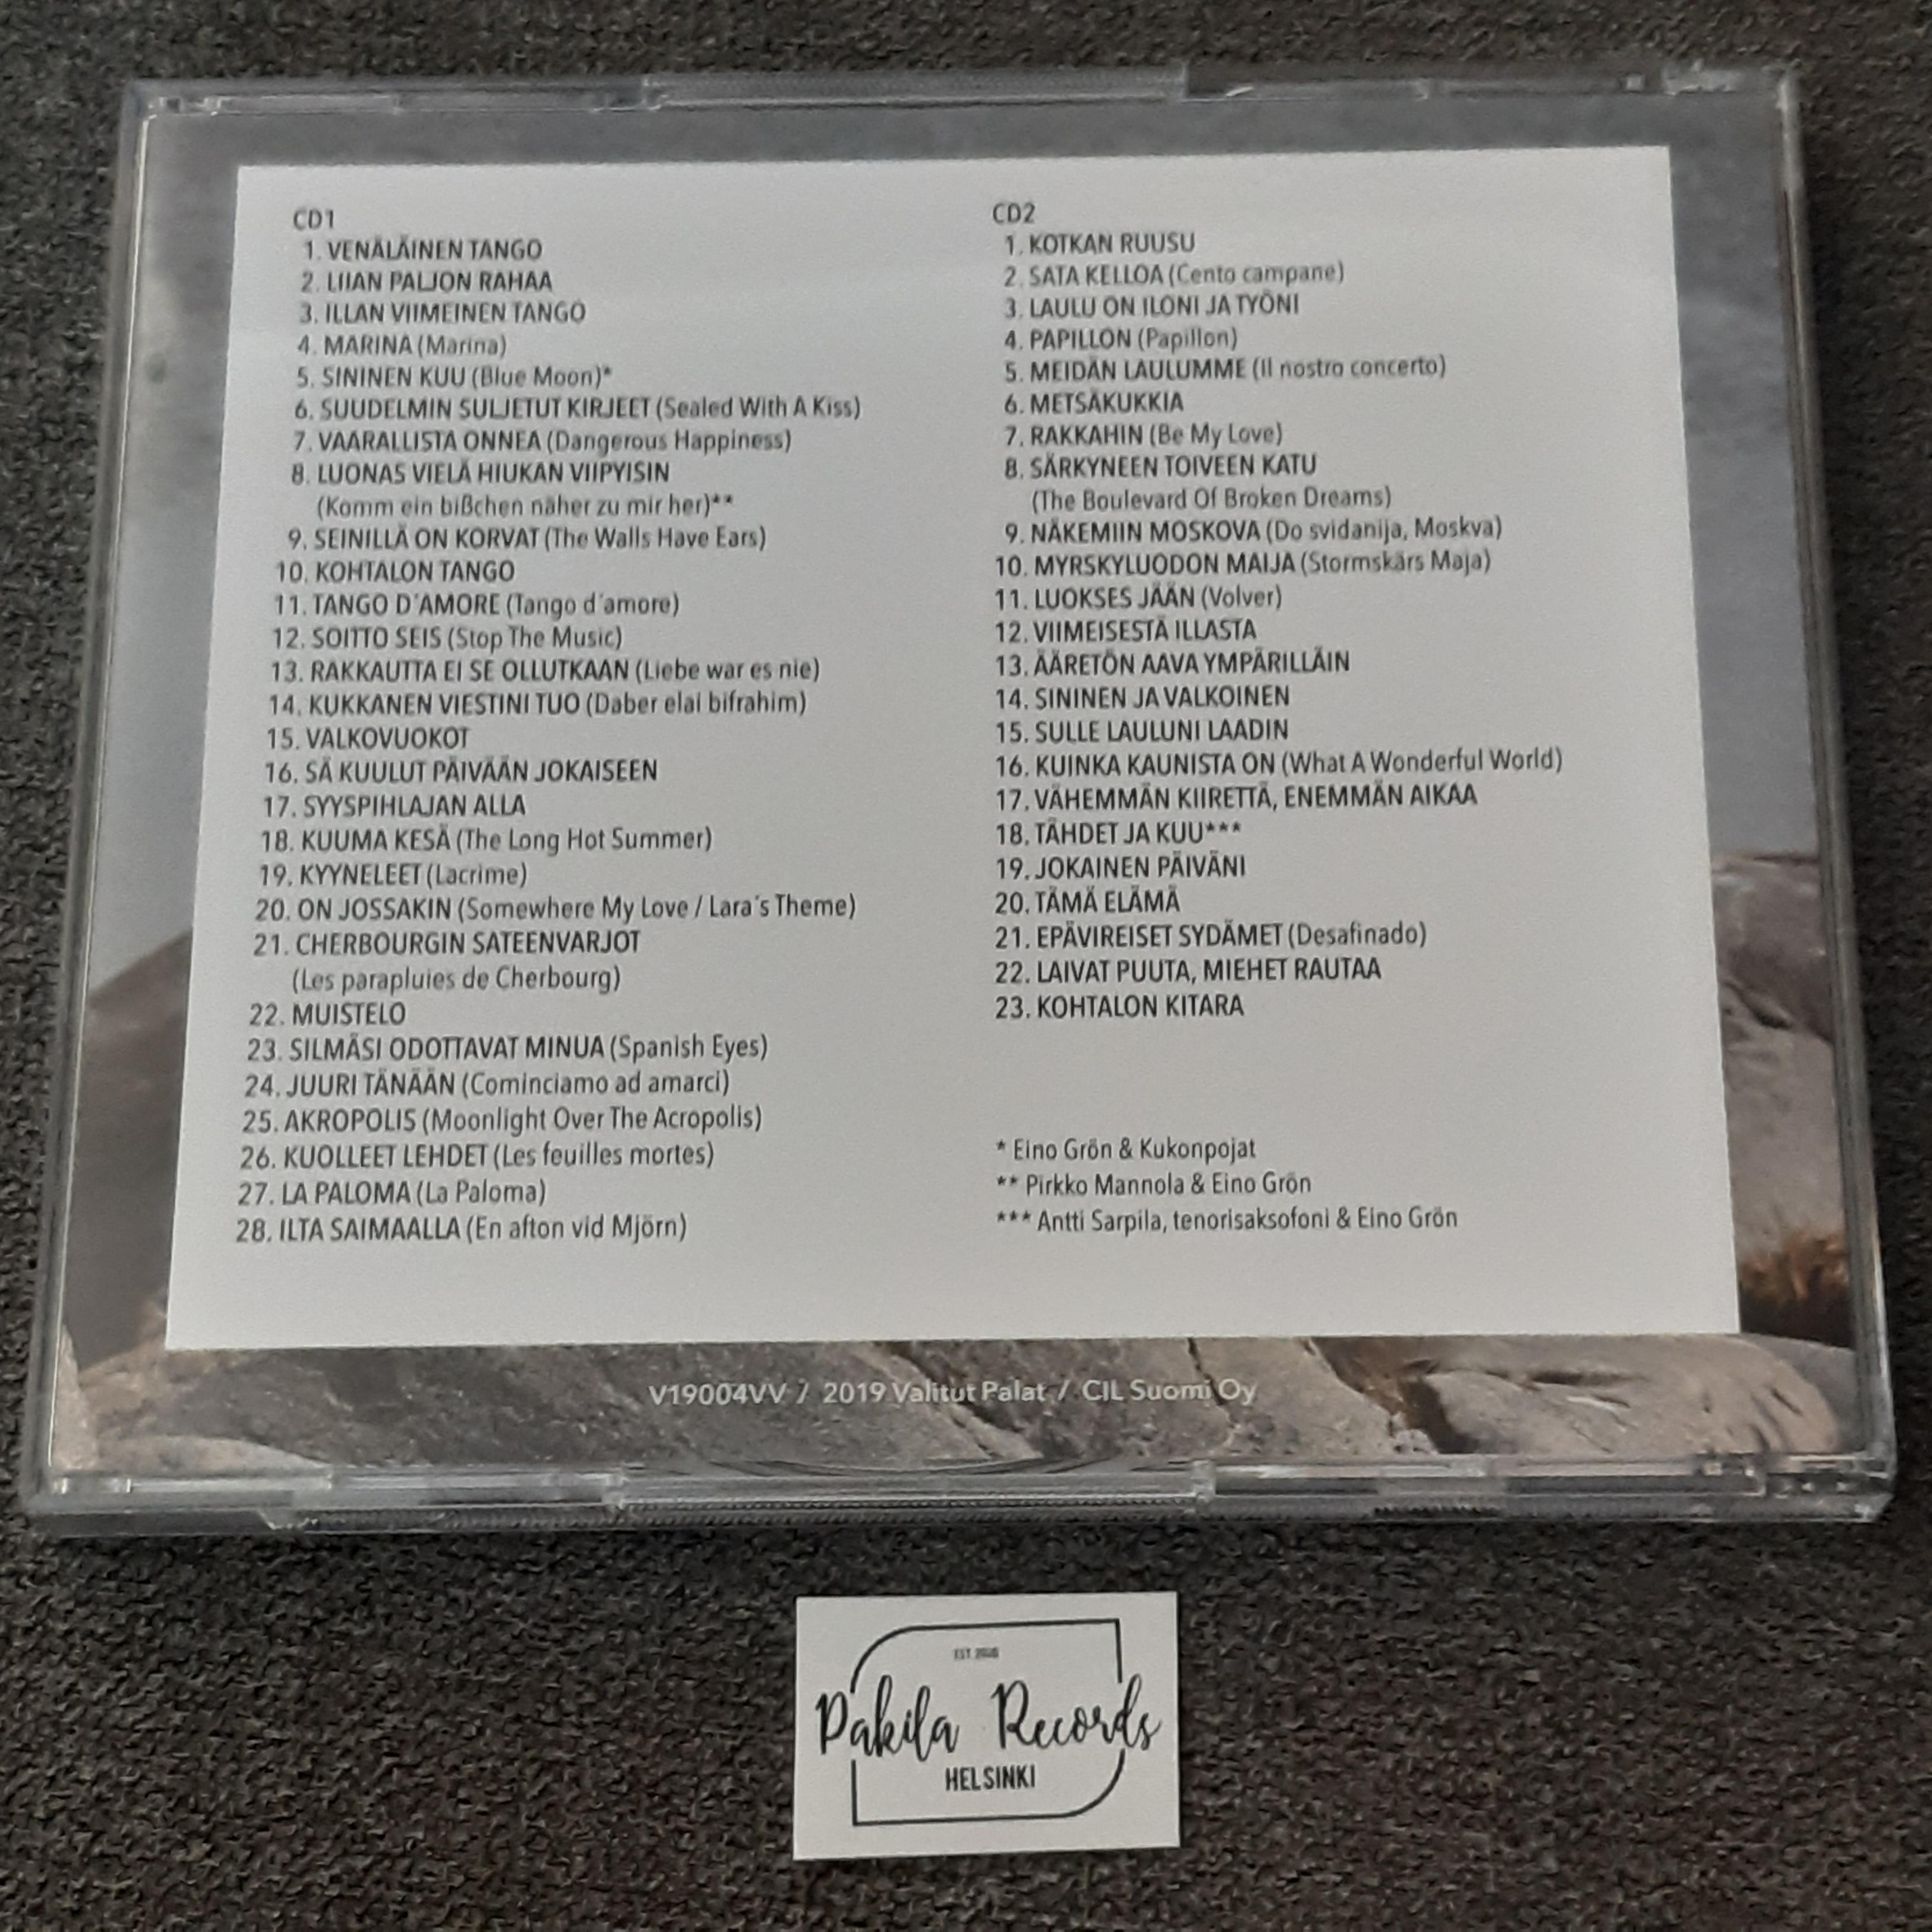 Eino Grön - Muistojen laulut - 2 CD (käytetty)